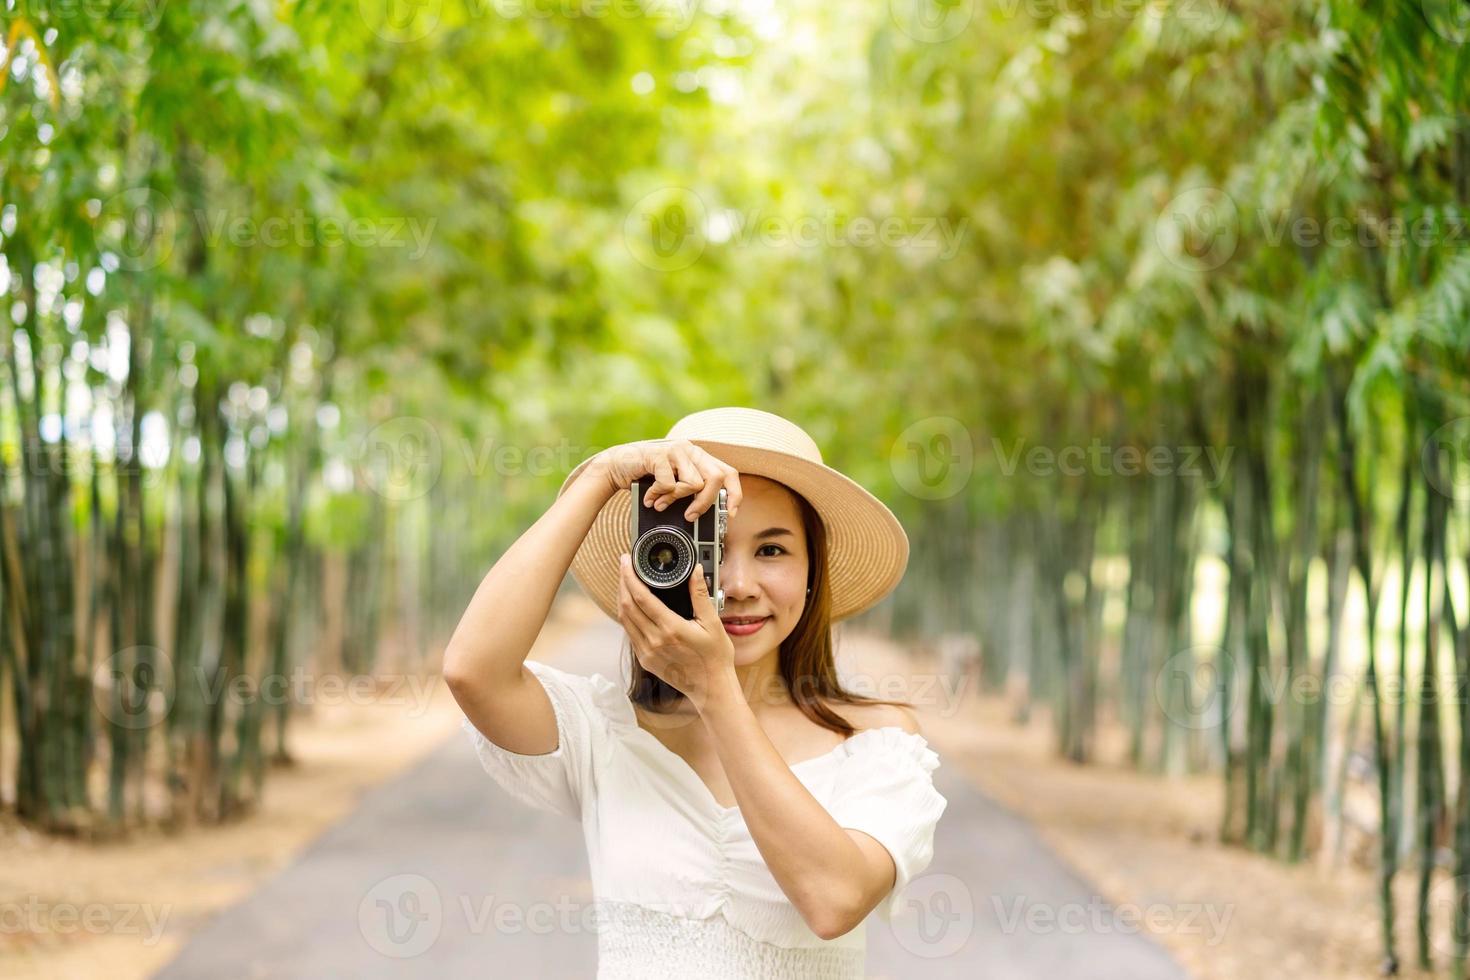 joven mujer feliz disfrutando y tomando una foto en el bosque de bambú mientras viaja en verano